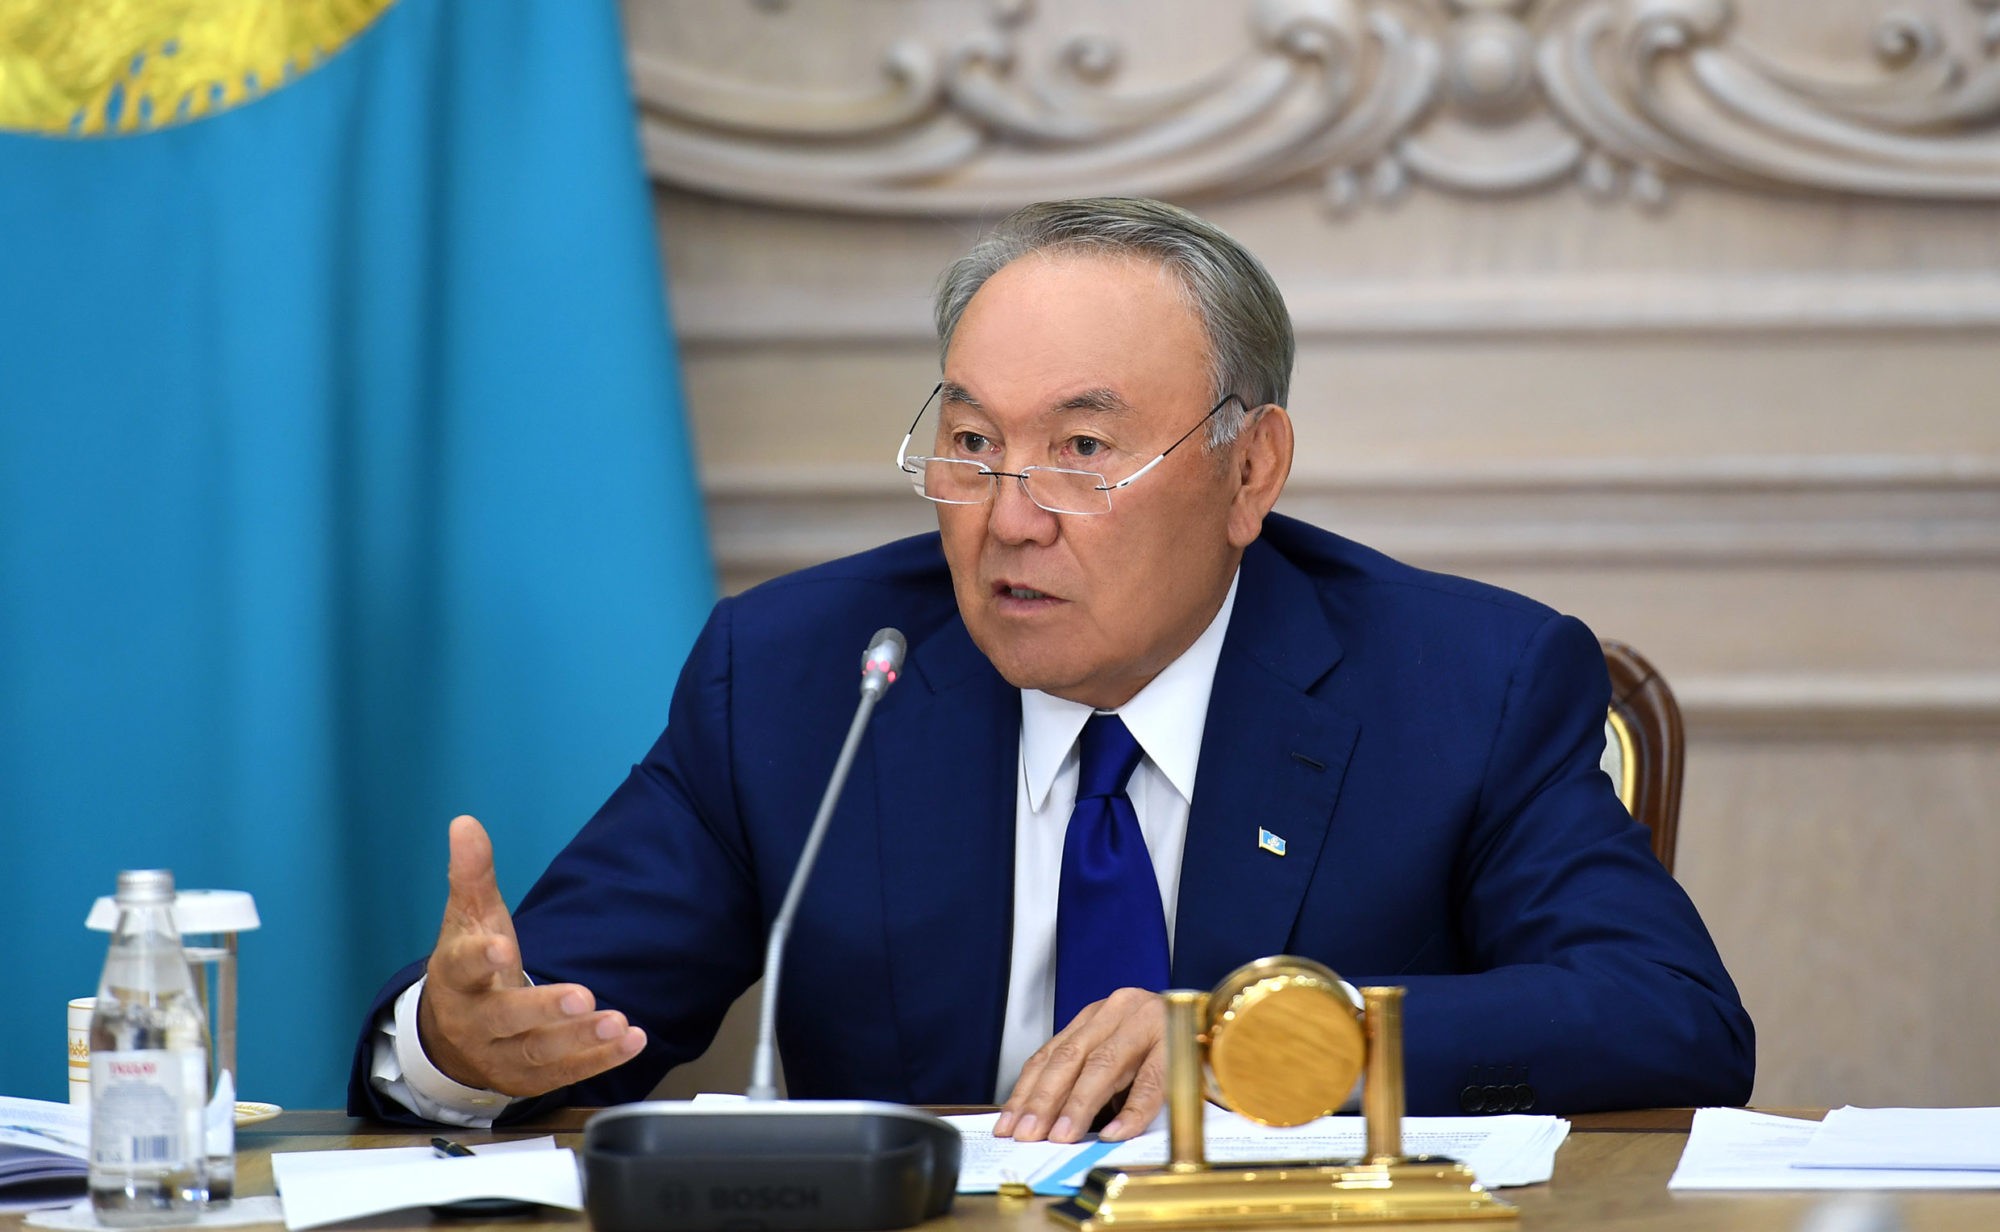 Əgər qohumlarım qanunu pozublarsa, cavab verməlidirlər - Nazarbayev